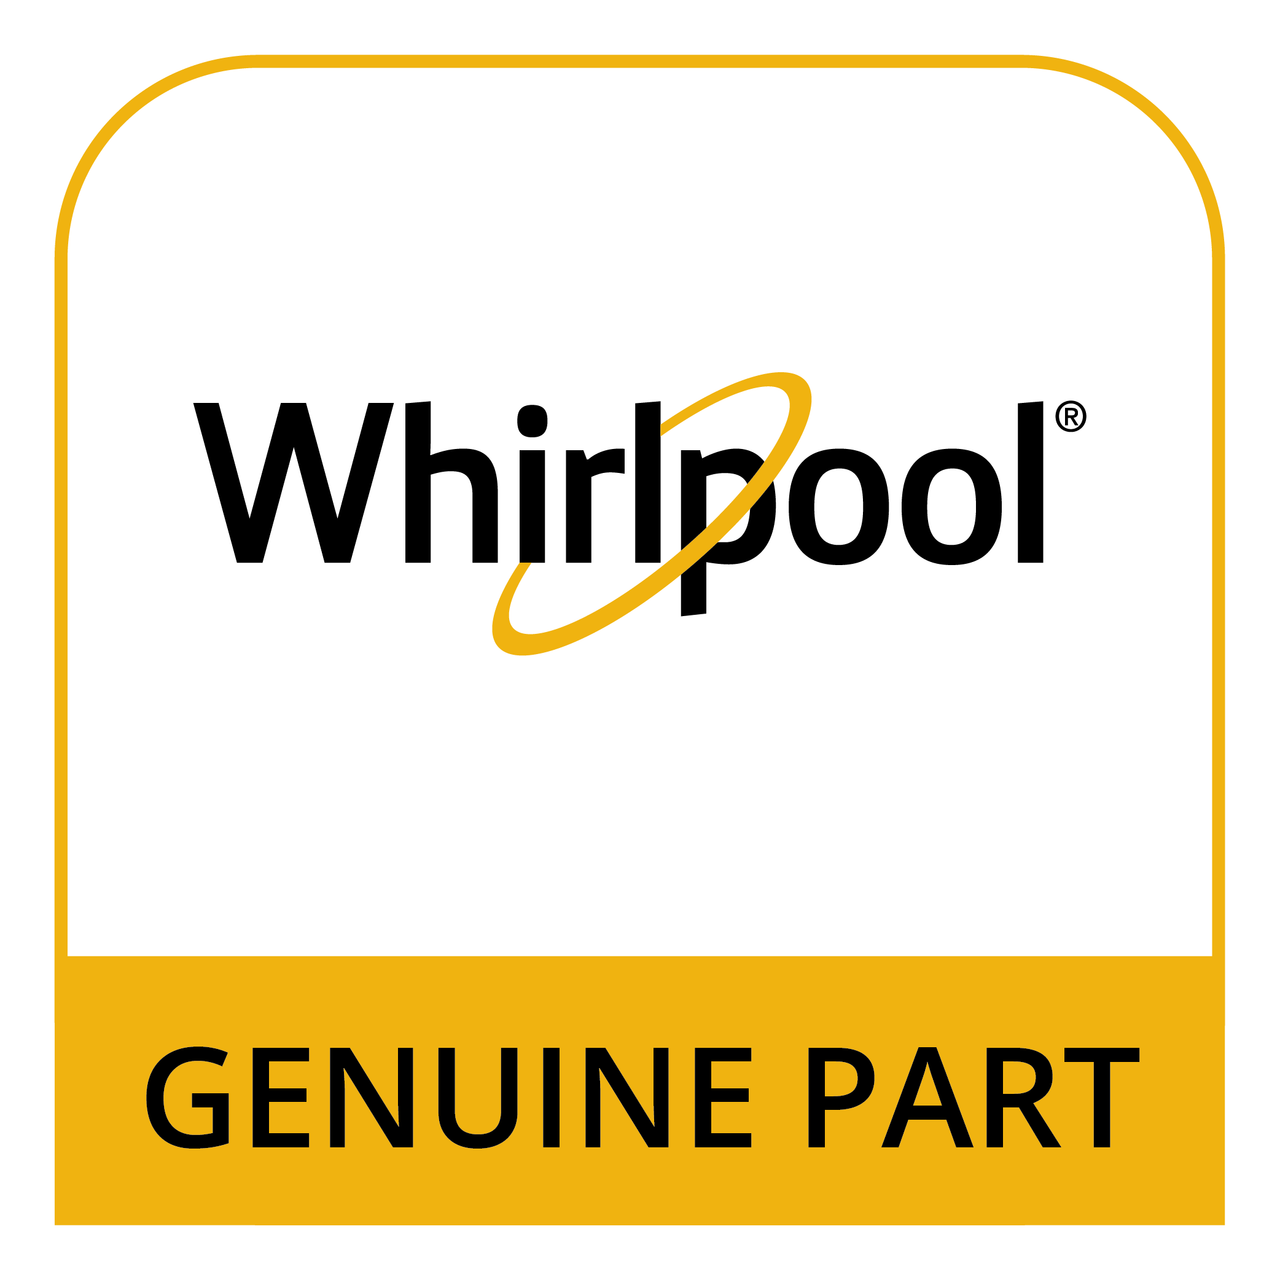 Whirlpool WFR318422 - Sl,Cg-20 S *Non-Wise* - Genuine Part